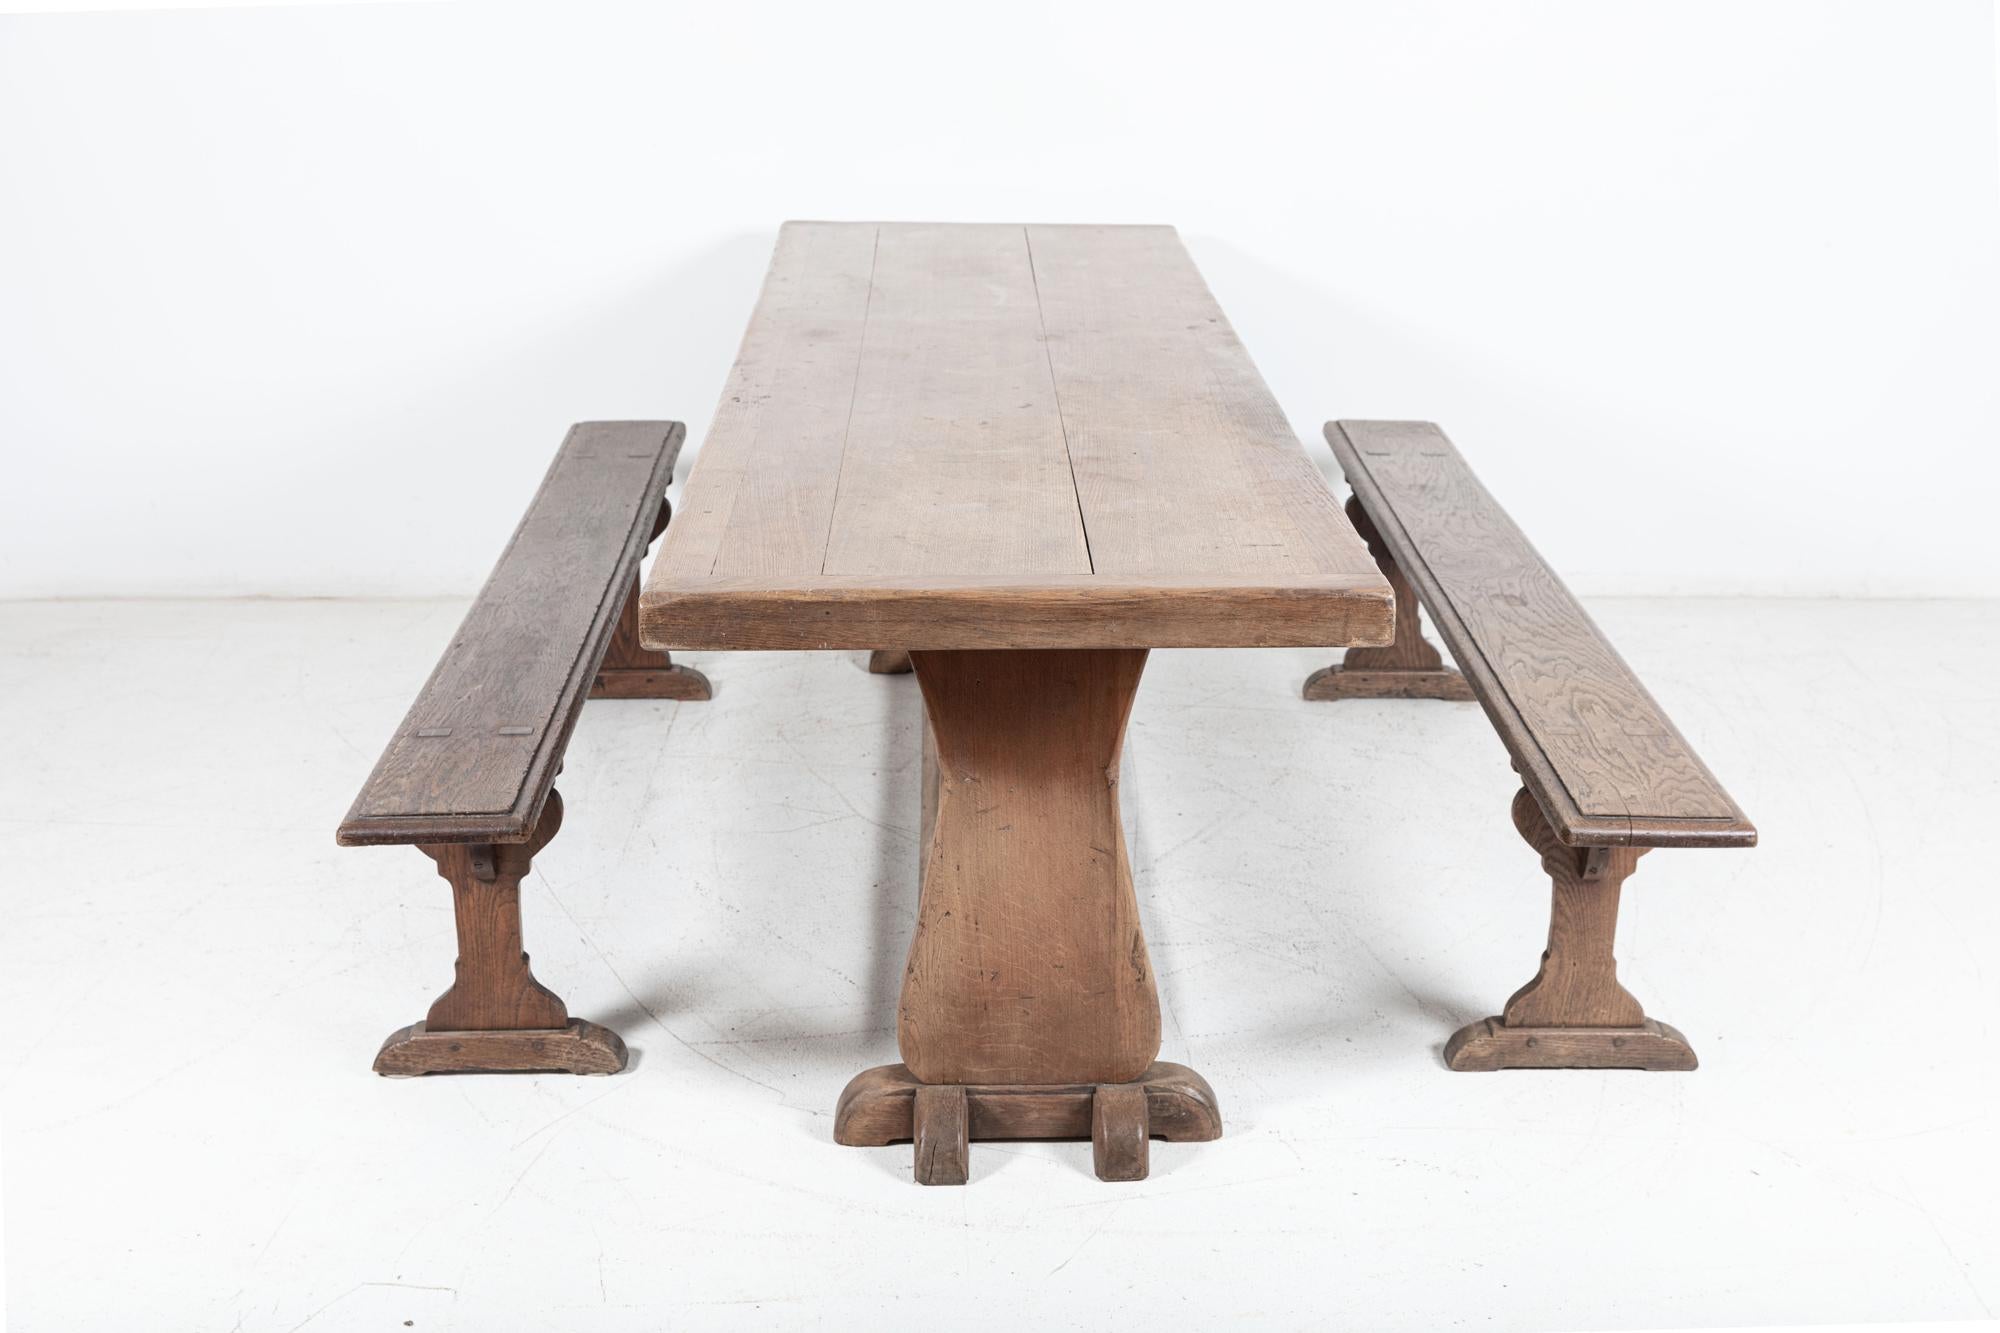 Vers le milieu du 20e siècle

Grande table à tréteaux en chêne anglais avec plateau en chêne de 6 cm d'épaisseur

sku 878

(bancs disponibles dans une liste séparée)

L240 x P72 x H76 cm
Du sol au tablier 70 cm